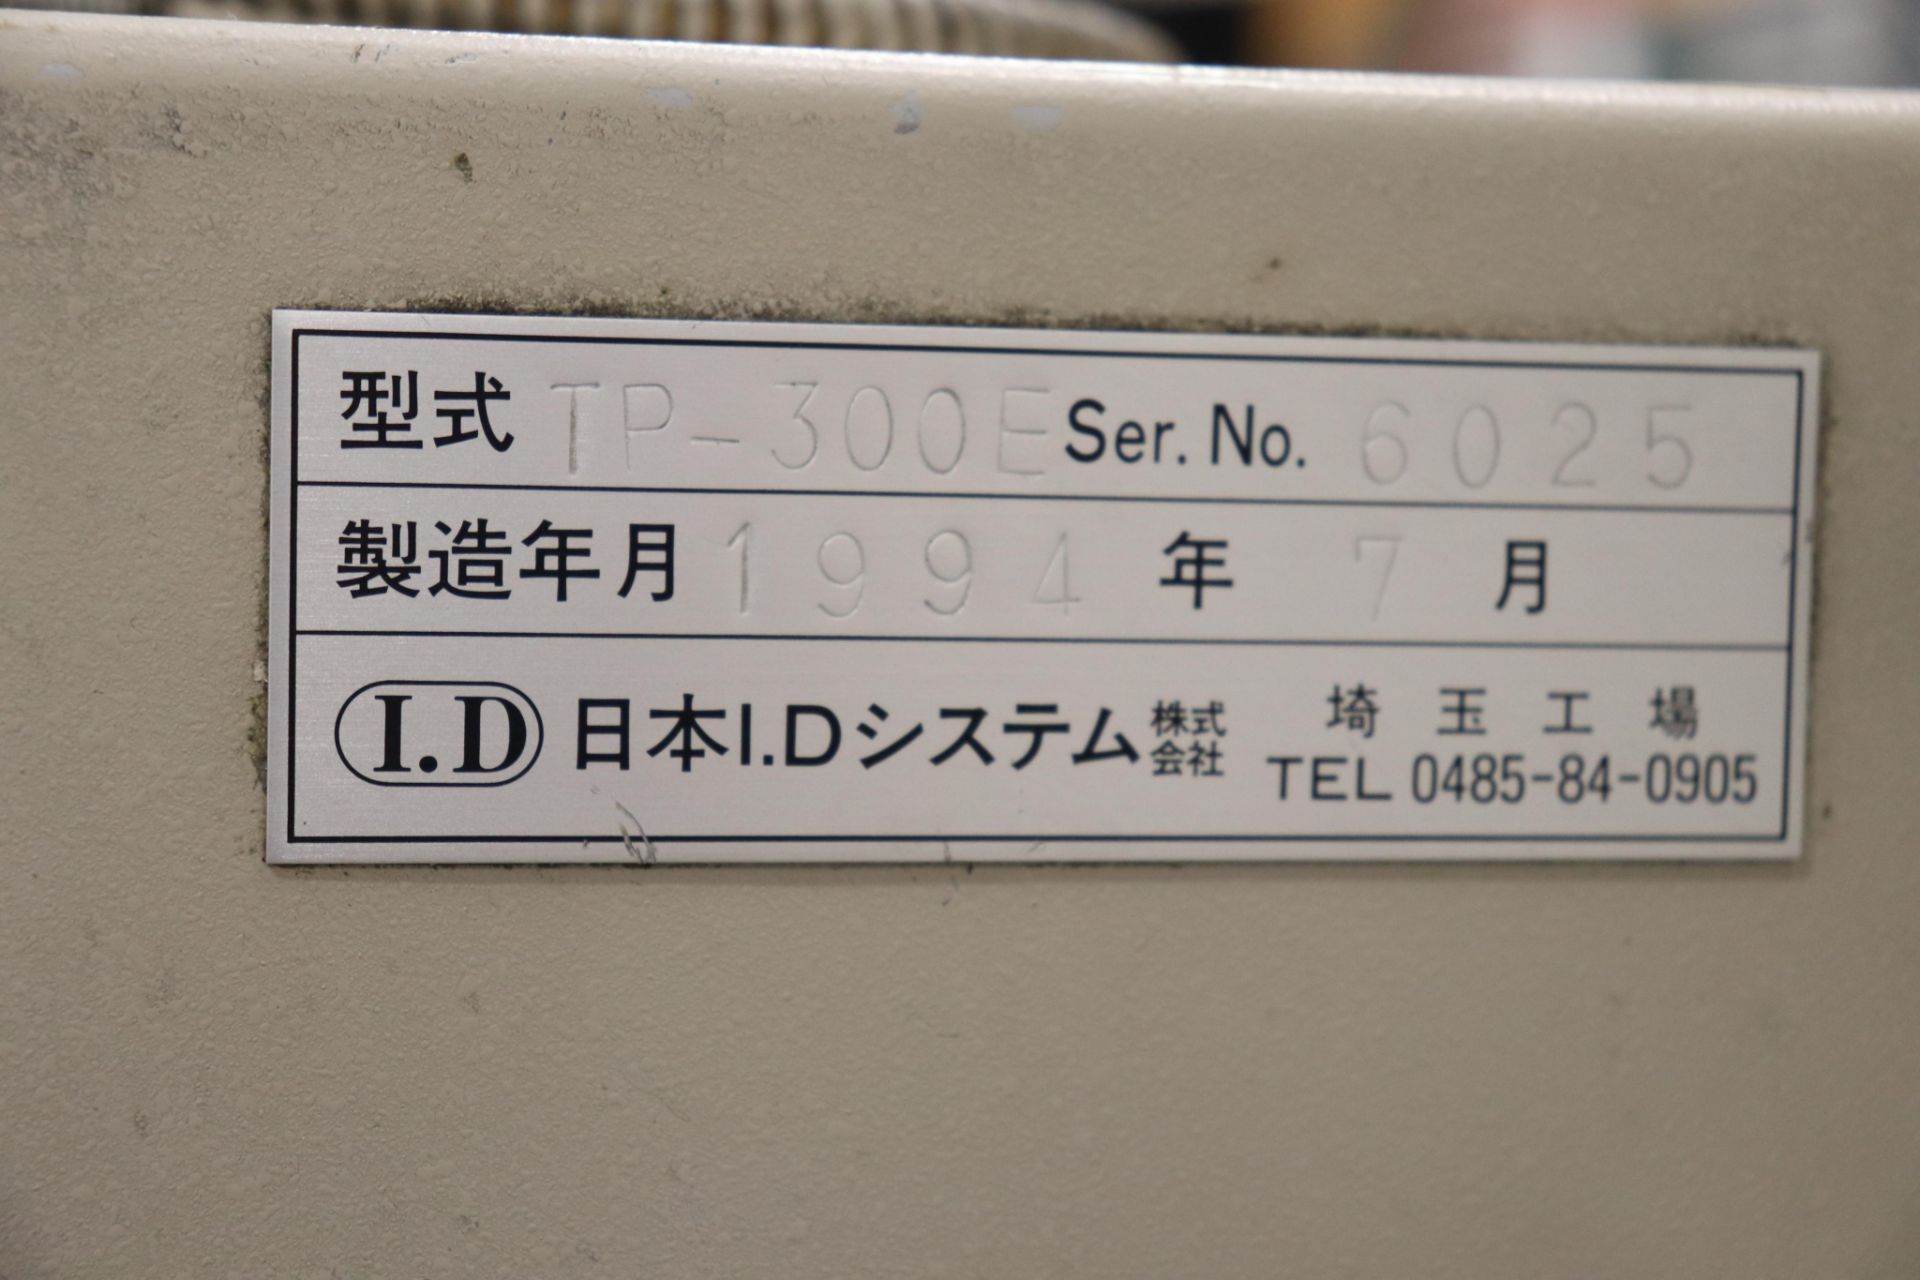 Nihon Tp-300 tool presetter w/ Miutoyo DRO - Image 7 of 16